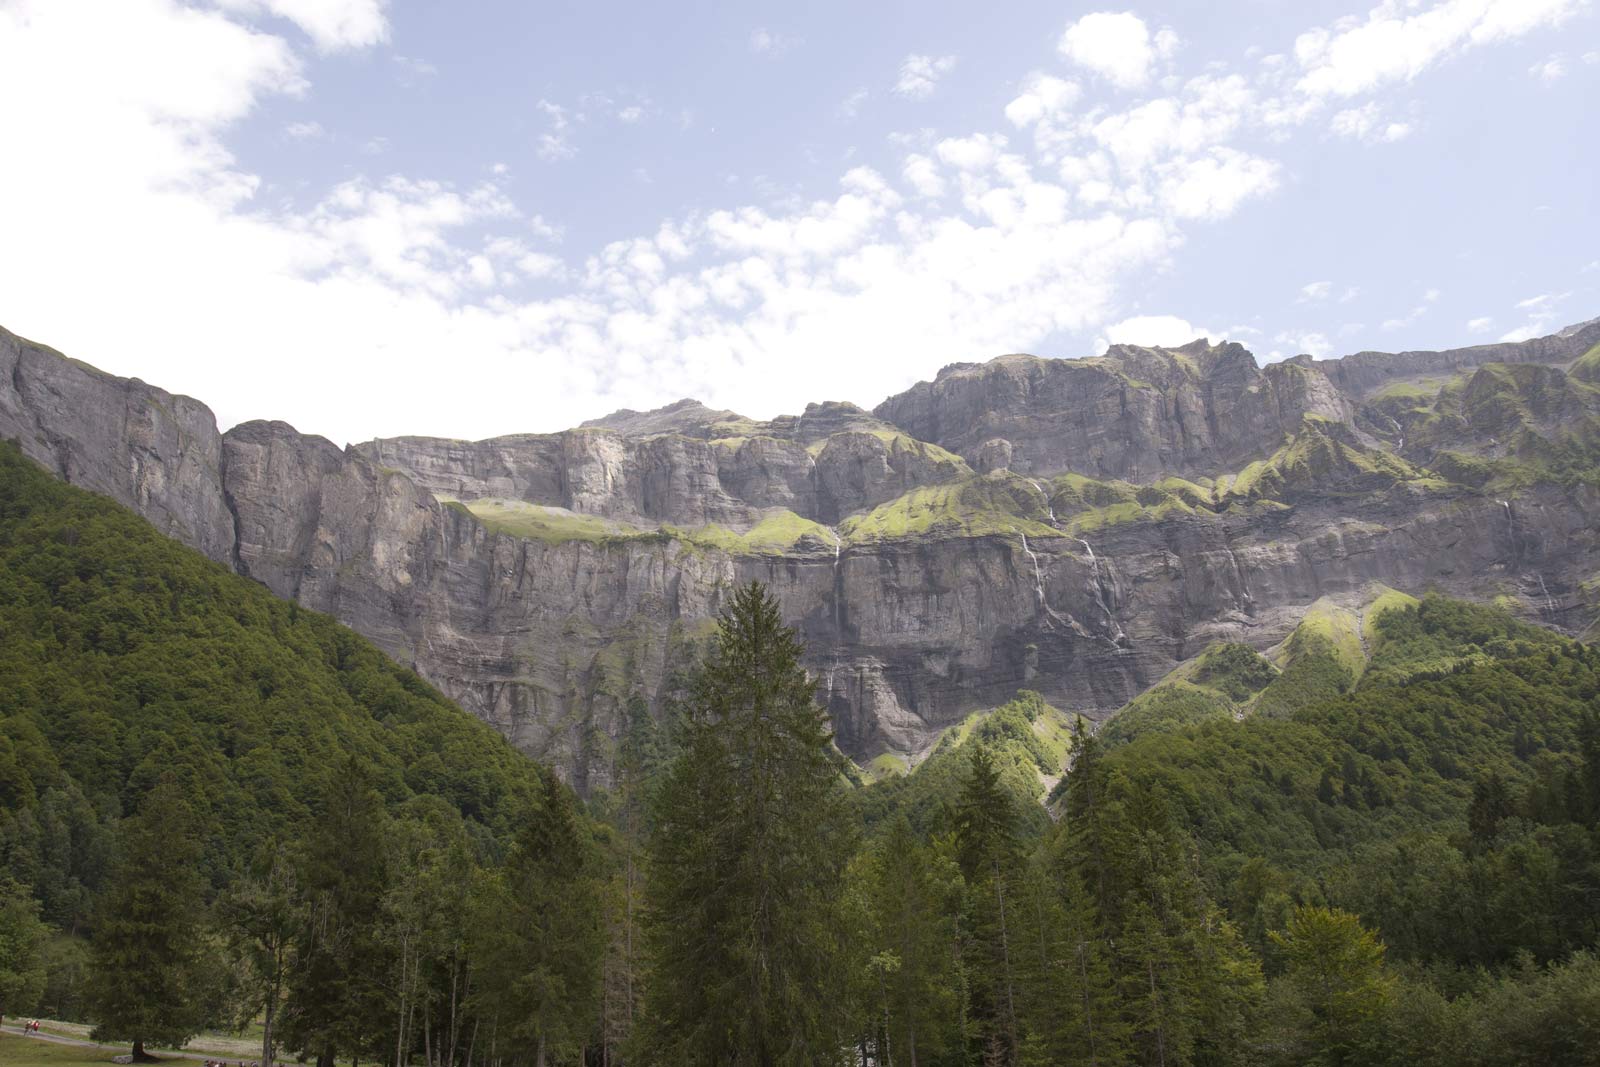 Keteldal bij Sixt-Fer-à-Cheval in de Franse Alpen